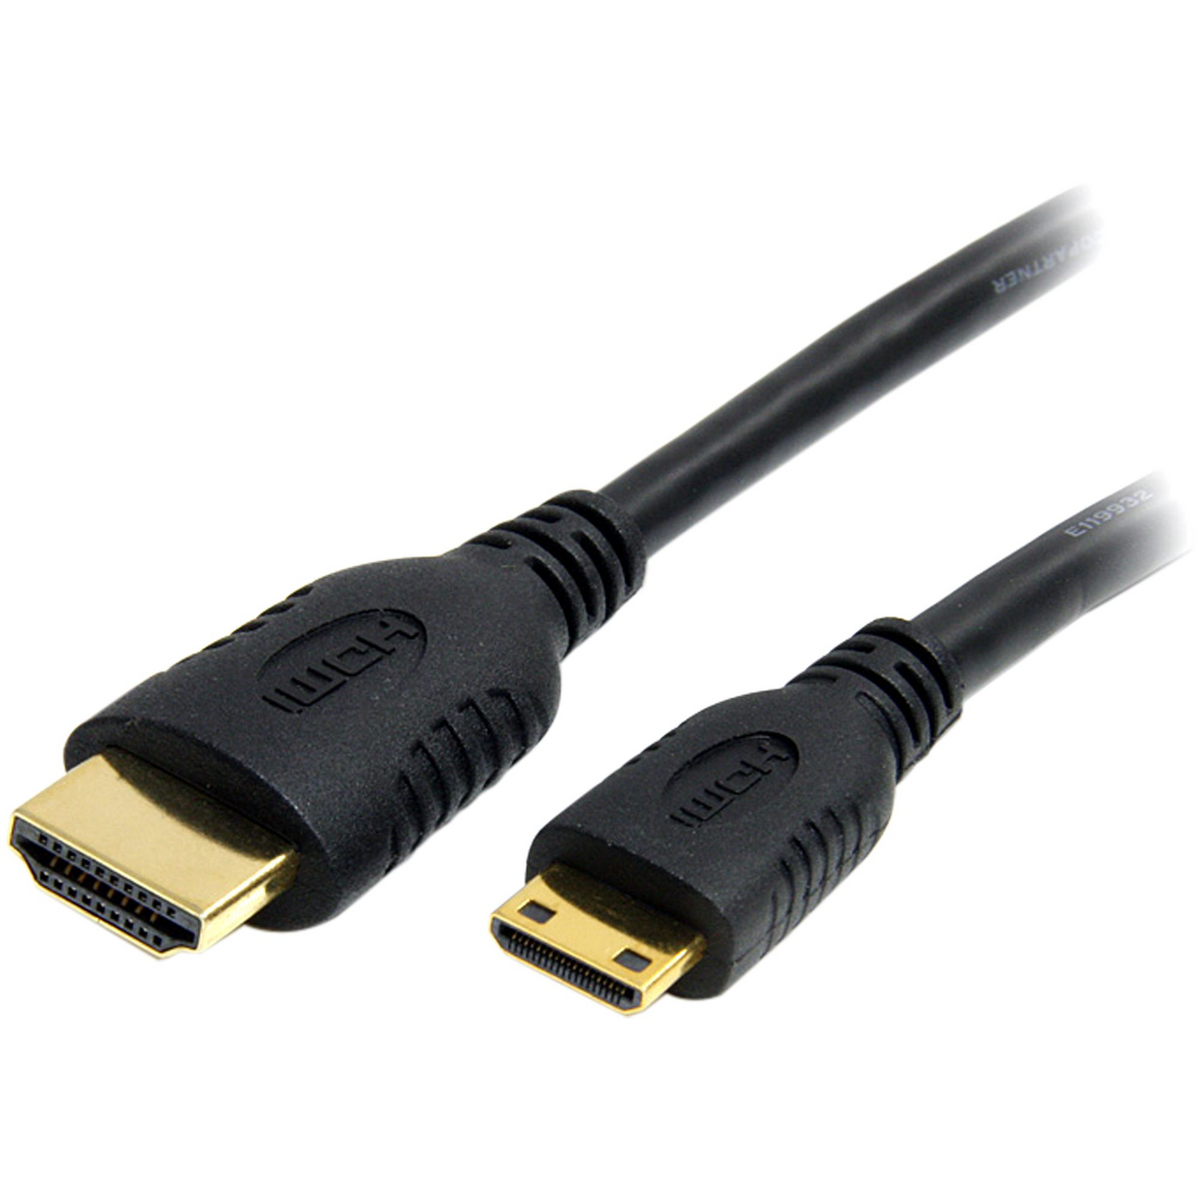 Cable HDMI to Mini HDMI - Albagame